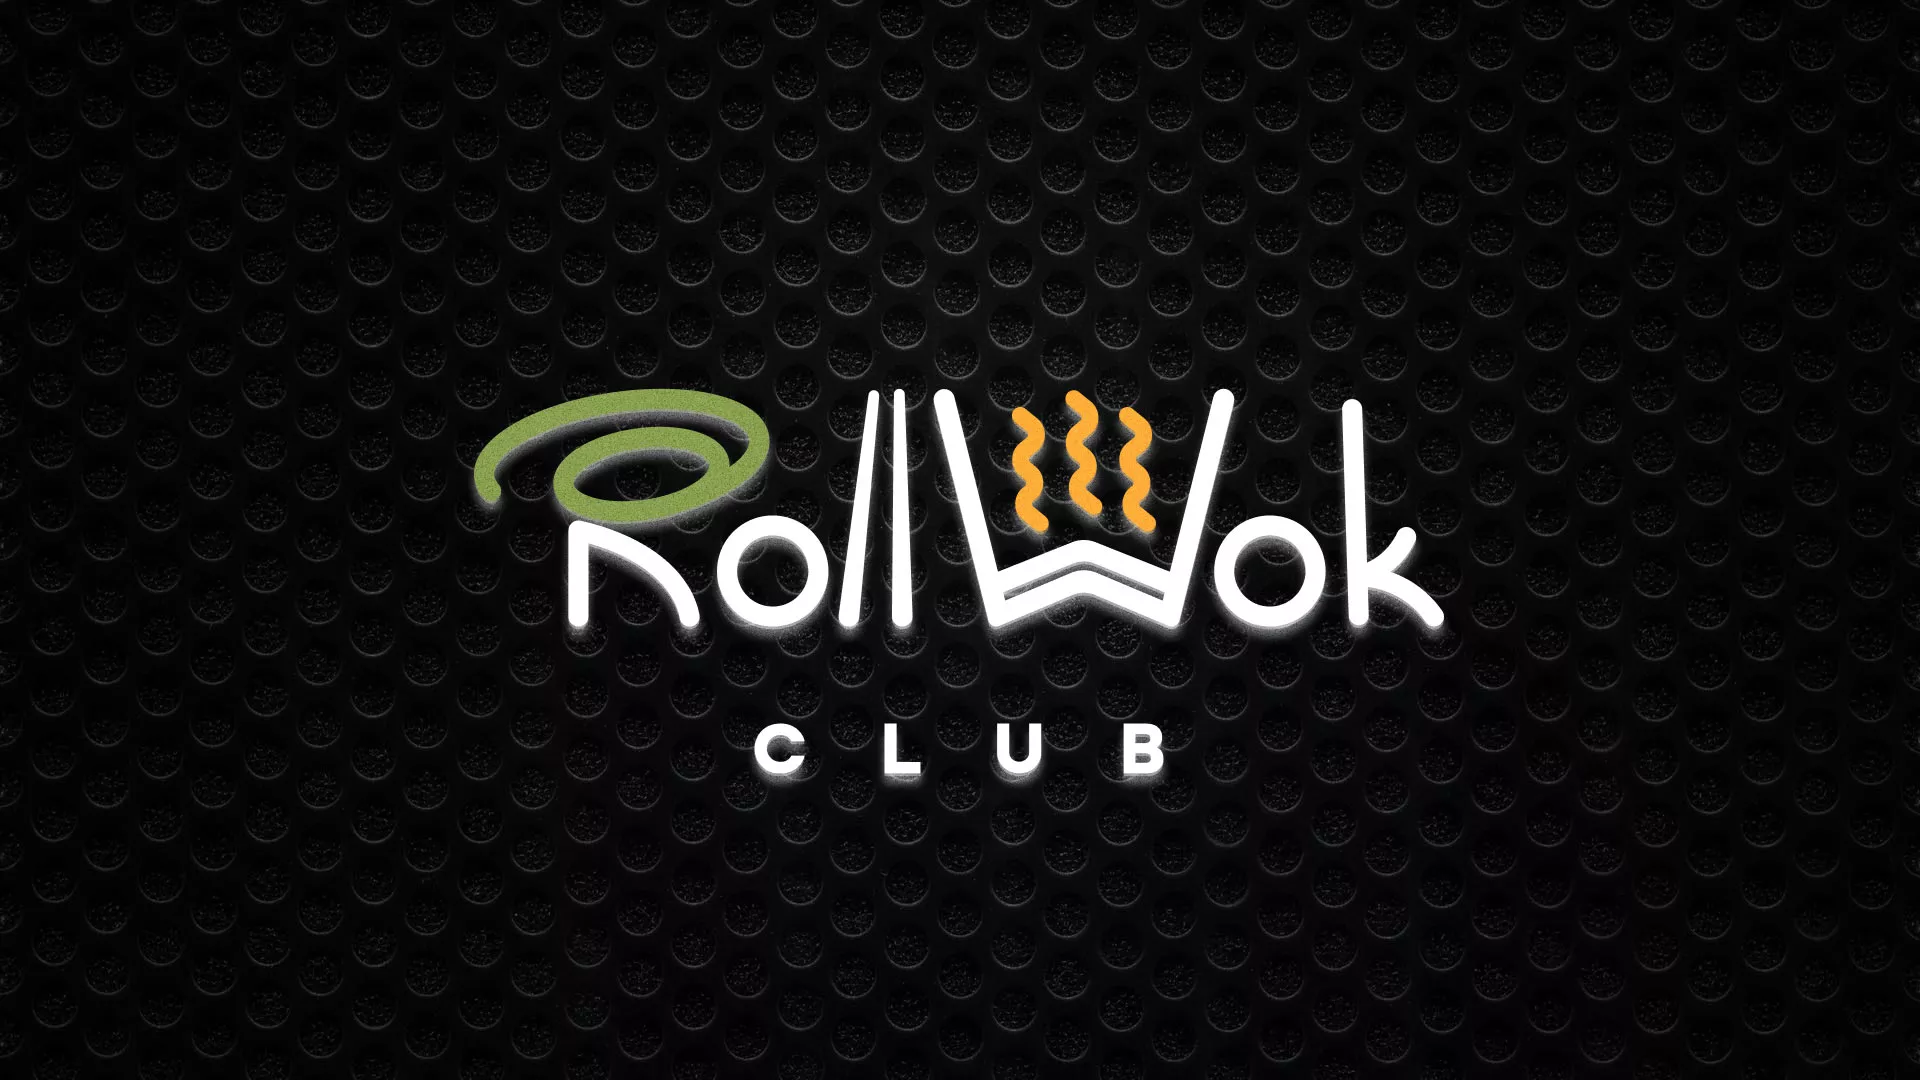 Брендирование торговых точек суши-бара «Roll Wok Club» в Новосибирске